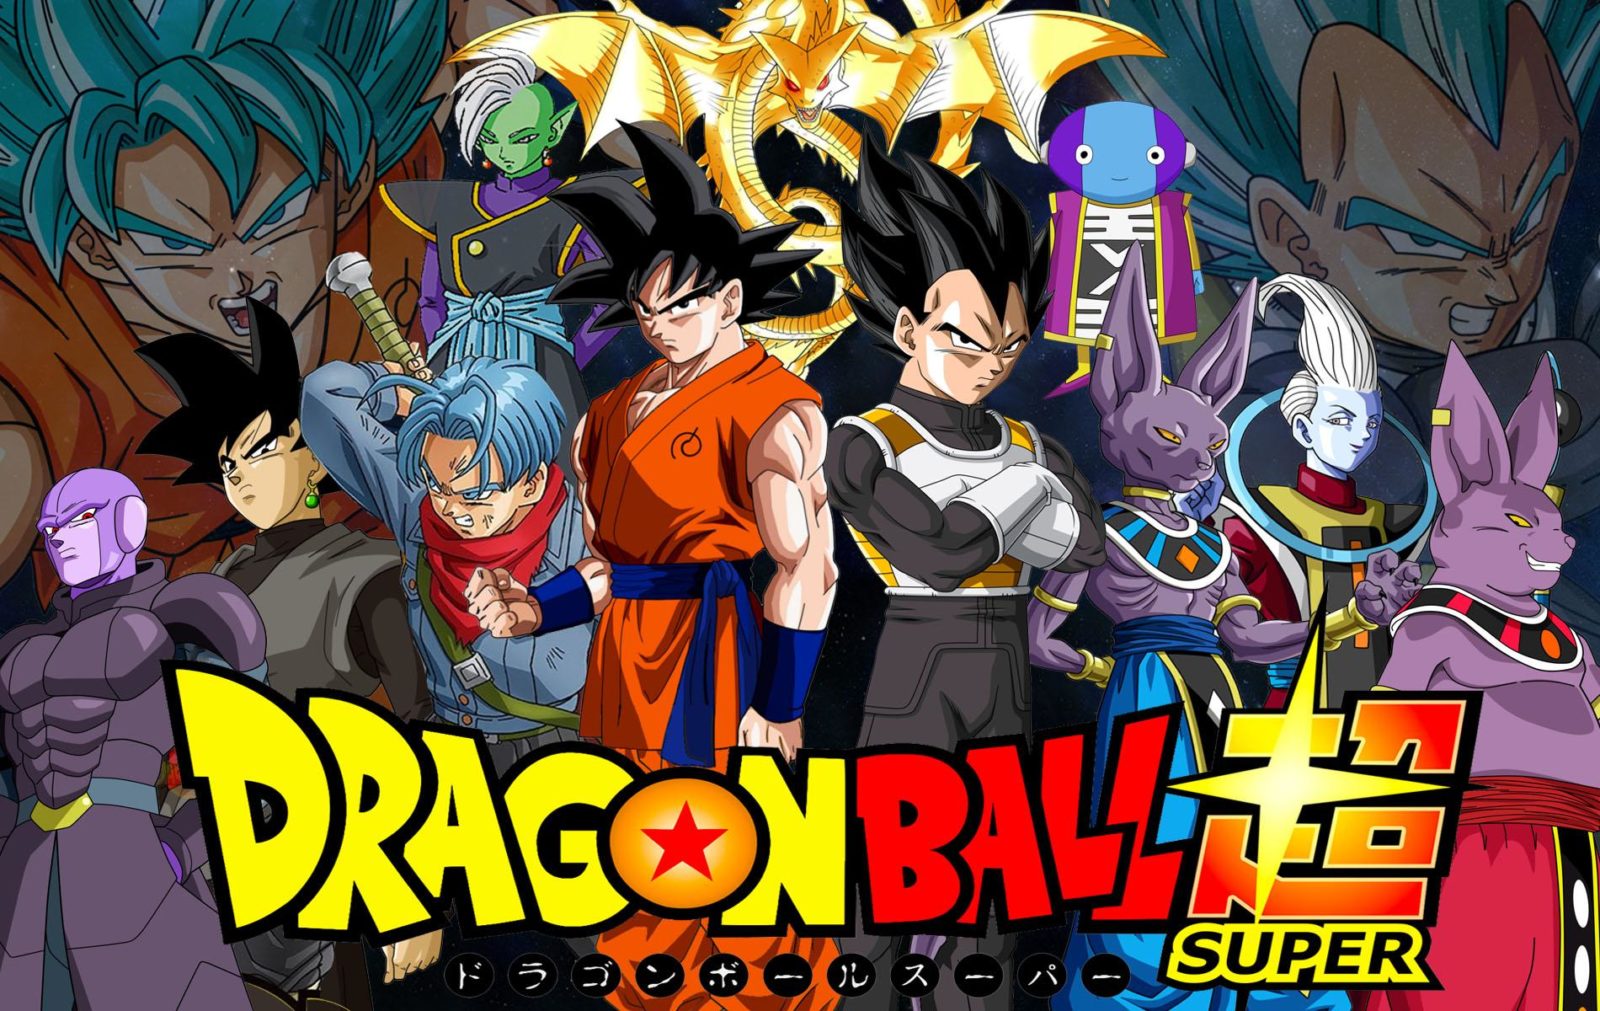 Ve el primer promo en español latino de Dragon Ball Super!